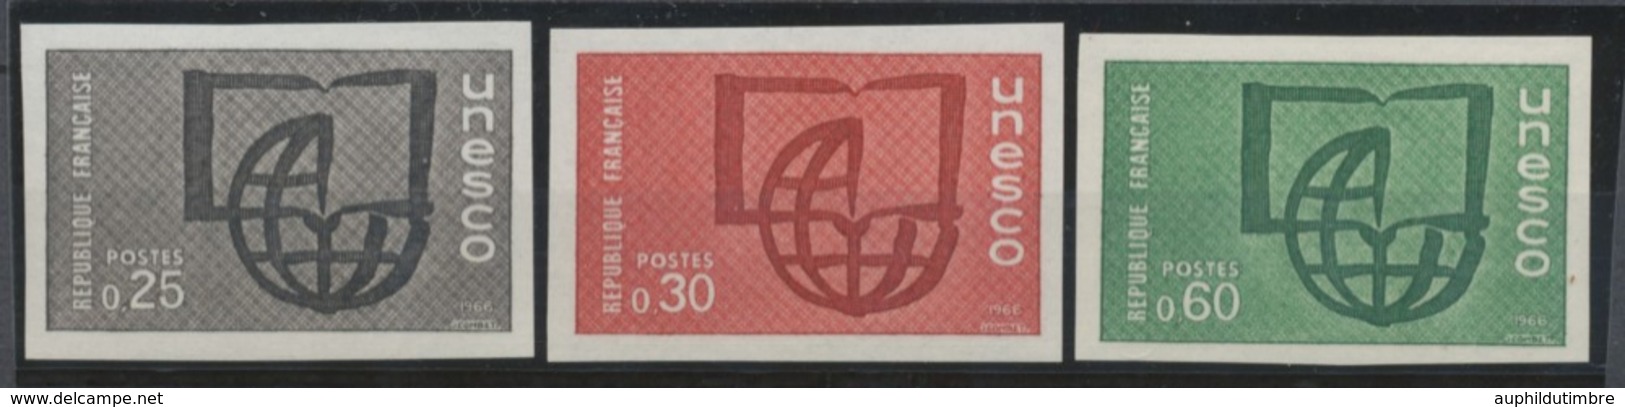 1966 France SERVICES Du N°36 à 38 Non Dentelés Neuf Luxe** COTE 215€ D1622 - Non Classés